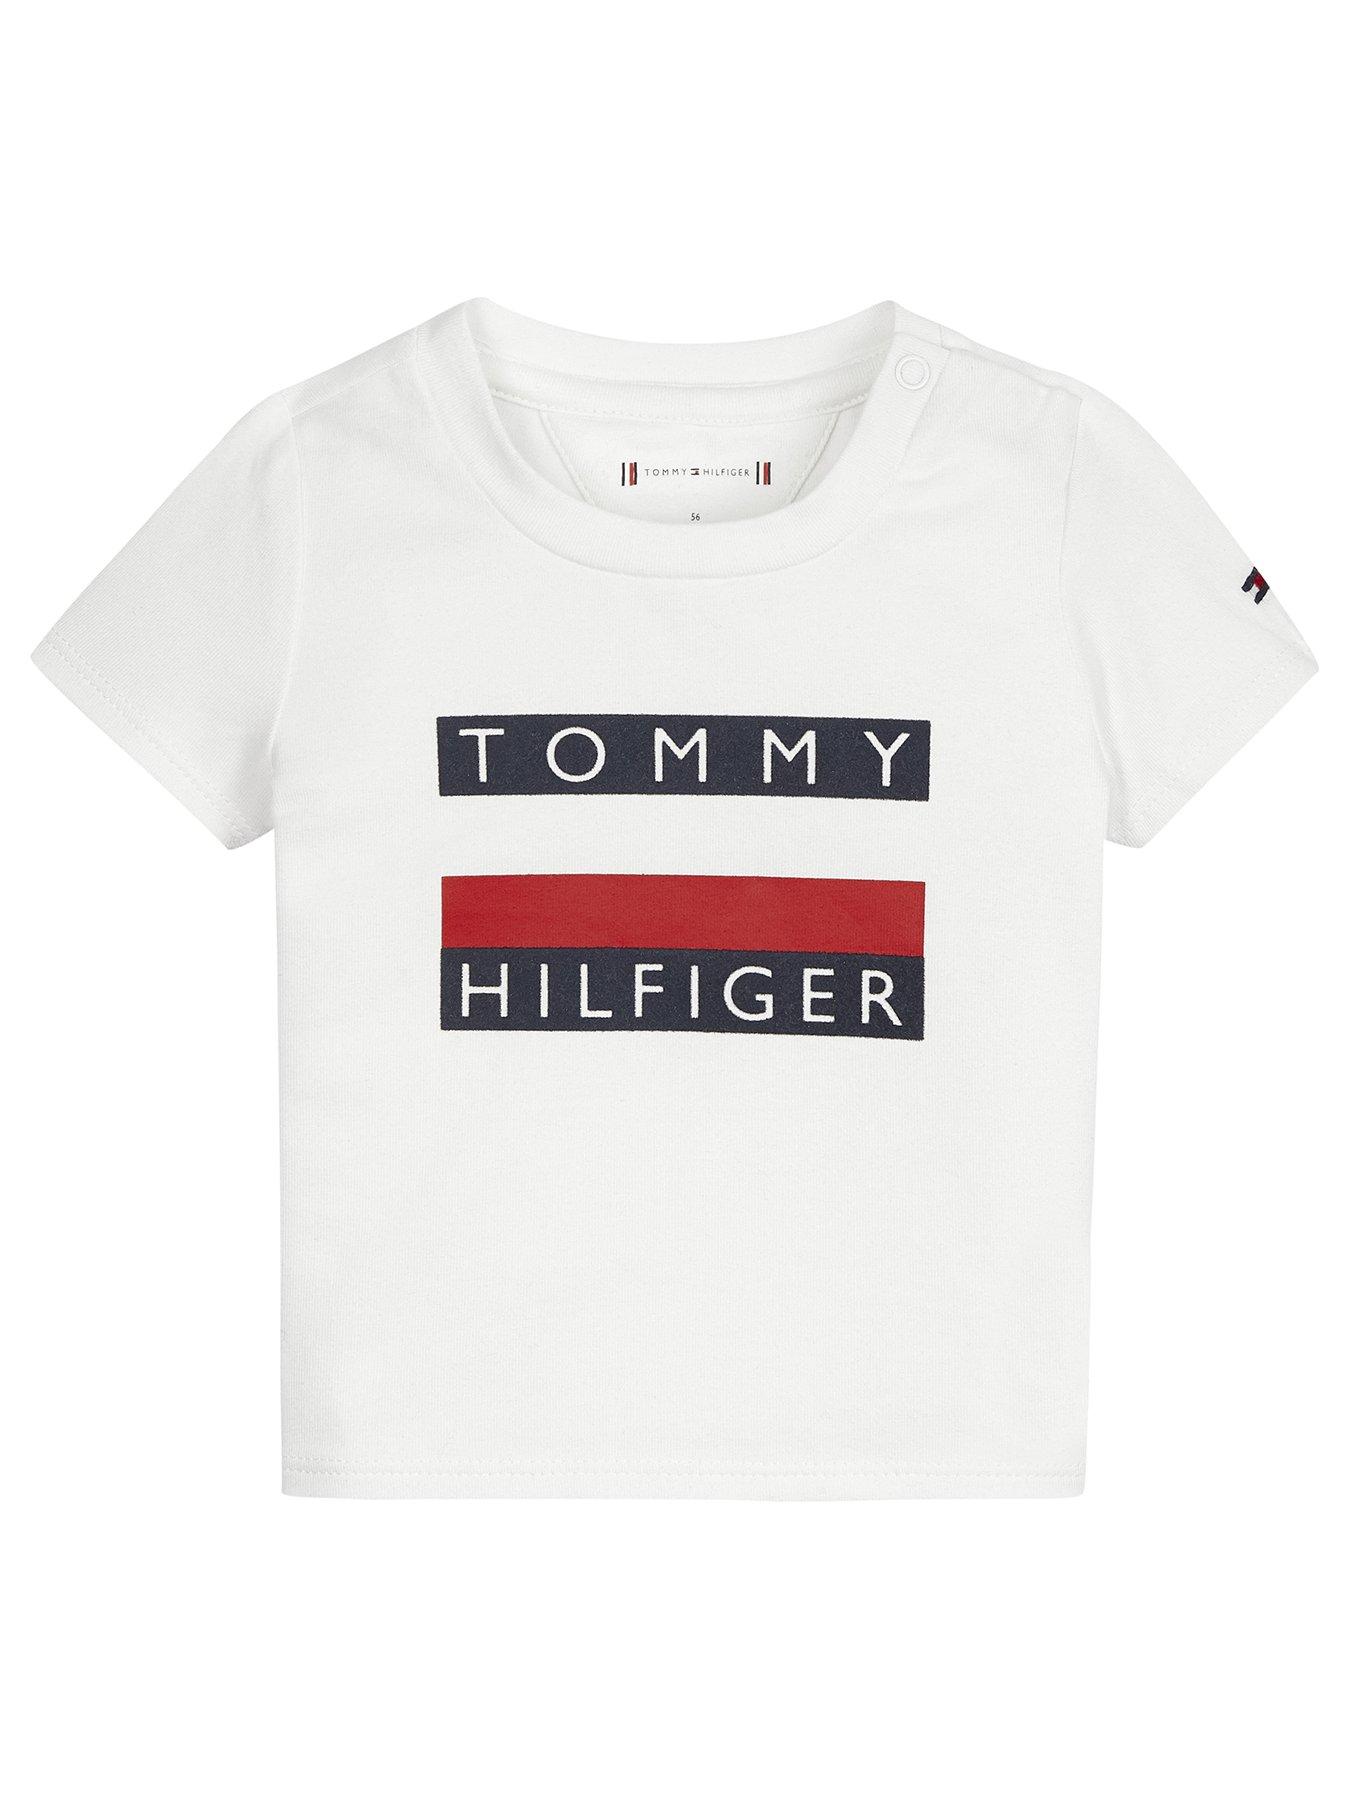 tommy hilfiger tshirt boys